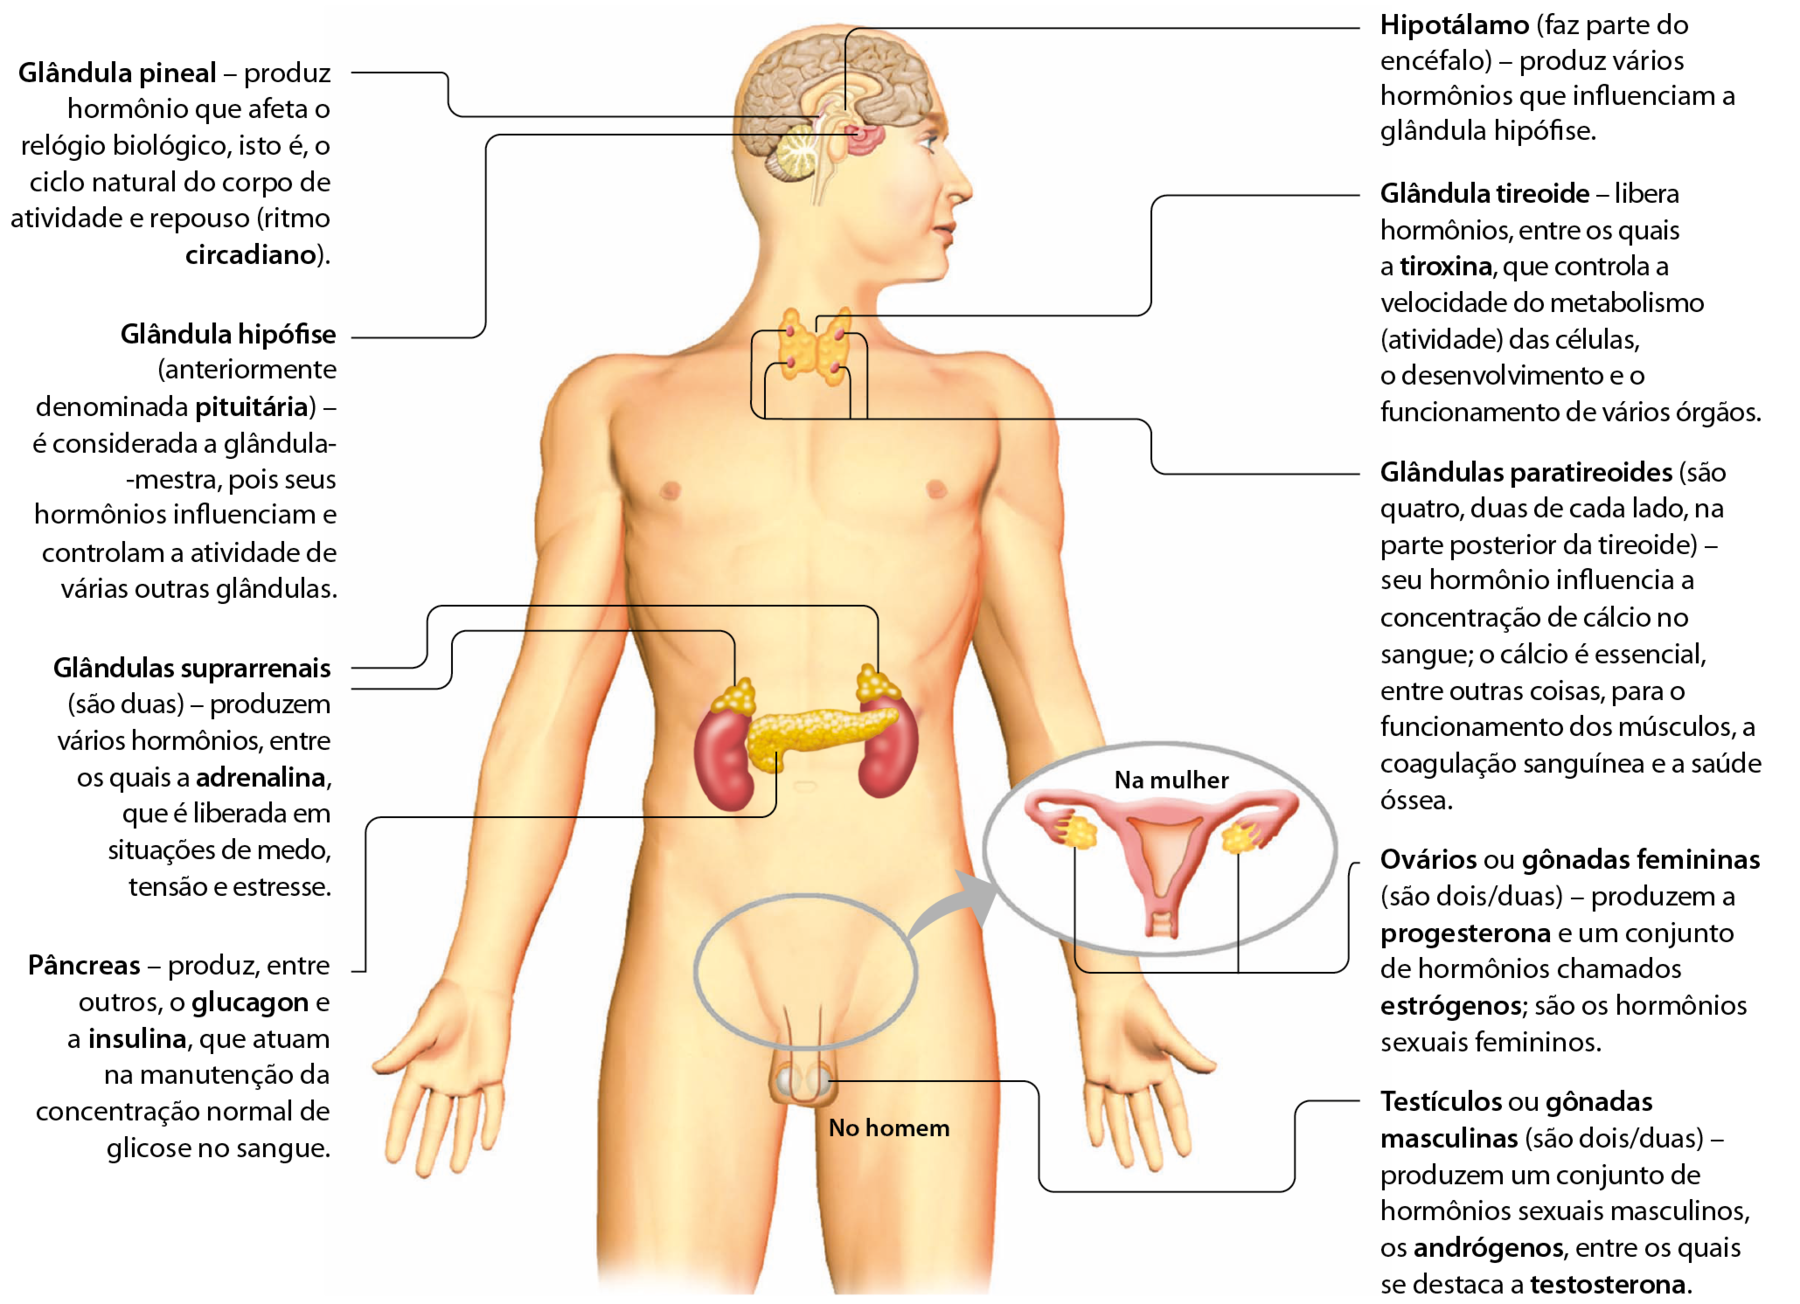 Esquema. Um homem nu com a cabeça virada para o lado. Dentro dele, alguns órgãos estão desenhados. Na cabeça. Glândula pineal – produz hormônio que afeta o relógio biológico, isto é, o ciclo natural do corpo de atividade e repouso (ritmo circadiano). Hipotálamo (faz parte do encéfalo) – produz vários hormônios que influenciam a glândula hipófise. Glândula hipó­fise (anteriormente denominada pituitária) – é considerada a glândula-mestra, pois seus hormônios infl­uenciam e controlam a atividade de várias outras glândulas. No pescoço. Glândula tireoide – libera hormônios, entre os quais a tiroxina, que controla a velocidade do metabolismo (atividade) das células, o desenvolvimento e o funcionamento de vários órgãos. Glândulas paratireoides (são quatro, duas de cada lado, na parte posterior da tireoide) – seu hormônio infl­uencia a concentração de cálcio no sangue; o cálcio é essencial, entre outras coisas, para o funcionamento dos músculos, a coagulação sanguínea e a saúde óssea. No abdômen. Glândulas suprarrenais (são duas) – produzem vários hormônios, entre os quais a adrenalina, que é liberada em situações de medo, tensão e estresse. Pâncreas – produz, entre outros, o glucagon e a insulina, que atuam na manutenção da concentração normal de glicose no sangue. Na região pélvica: No testículo. Testículos ou gônadas masculinas (são dois/duas) – produzem um conjunto de hormônios sexuais masculinos, os andrógenos, entre os quais se destaca a testosterona. Destaque para o desenho de parte do sistema genital da mulher. No ovário: Ovários ou gônadas femininas (são dois/duas) – produzem a progesterona e um conjunto de hormônios chamados estrógenos; são os hormônios sexuais femininos.